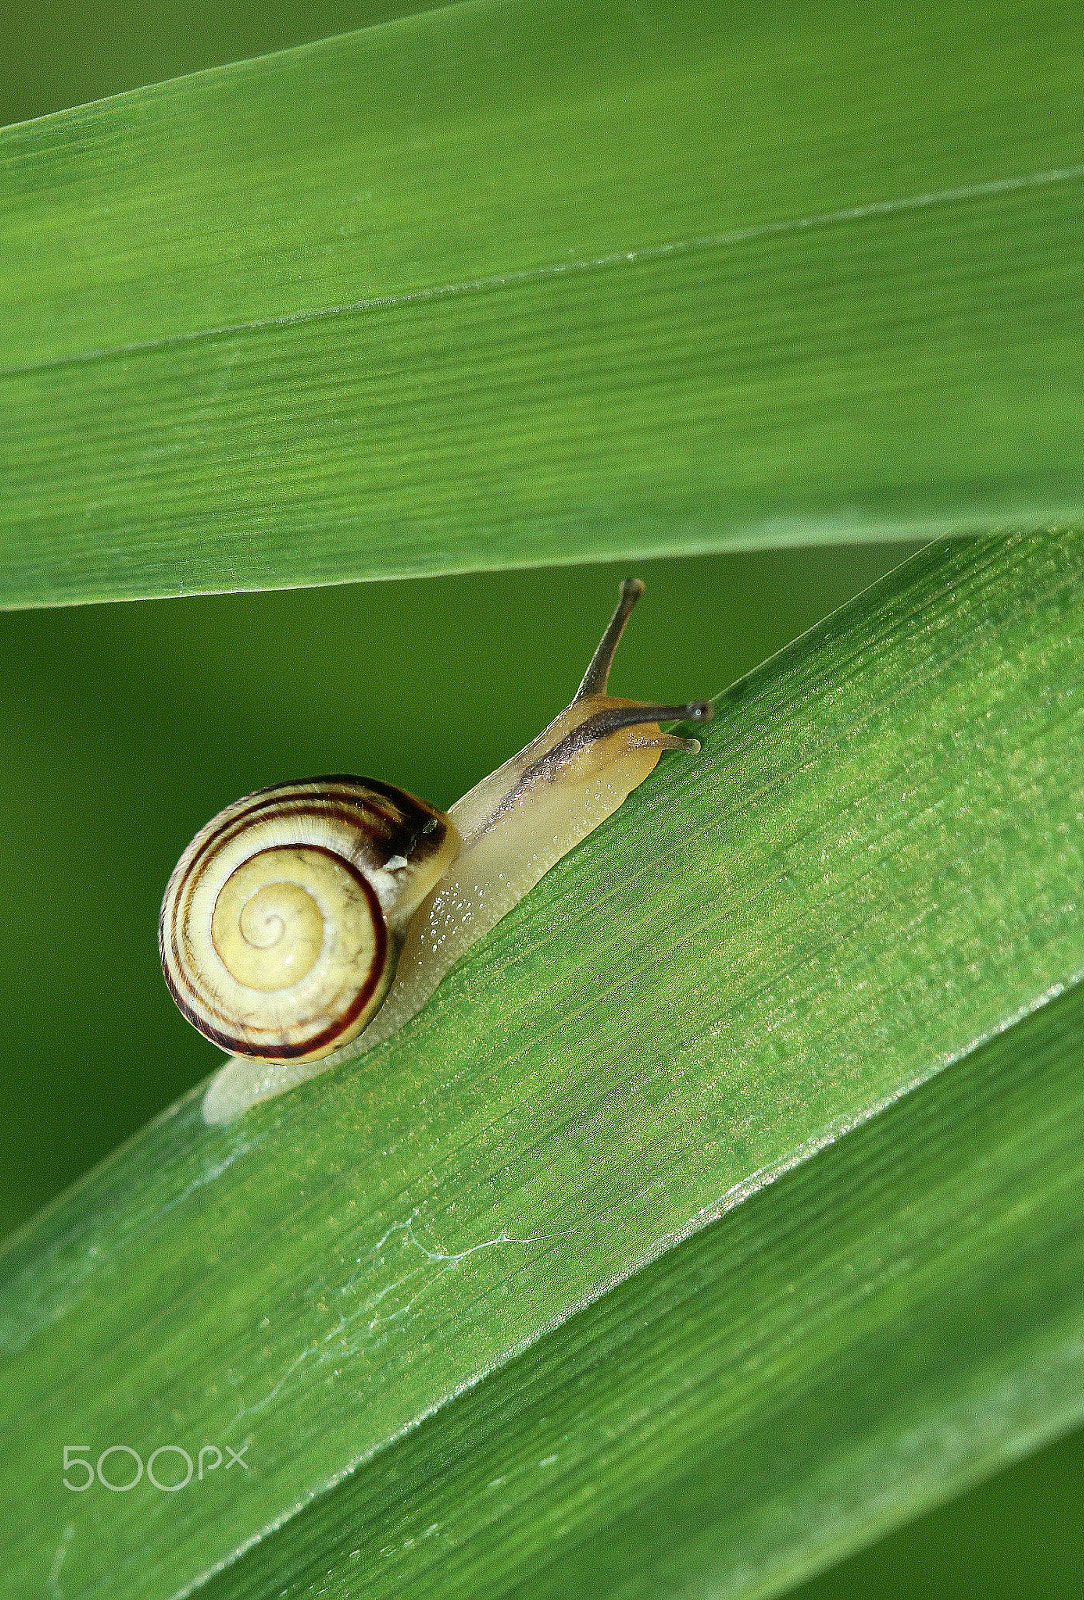 Canon EOS 7D sample photo. Snail snail show the horns photography